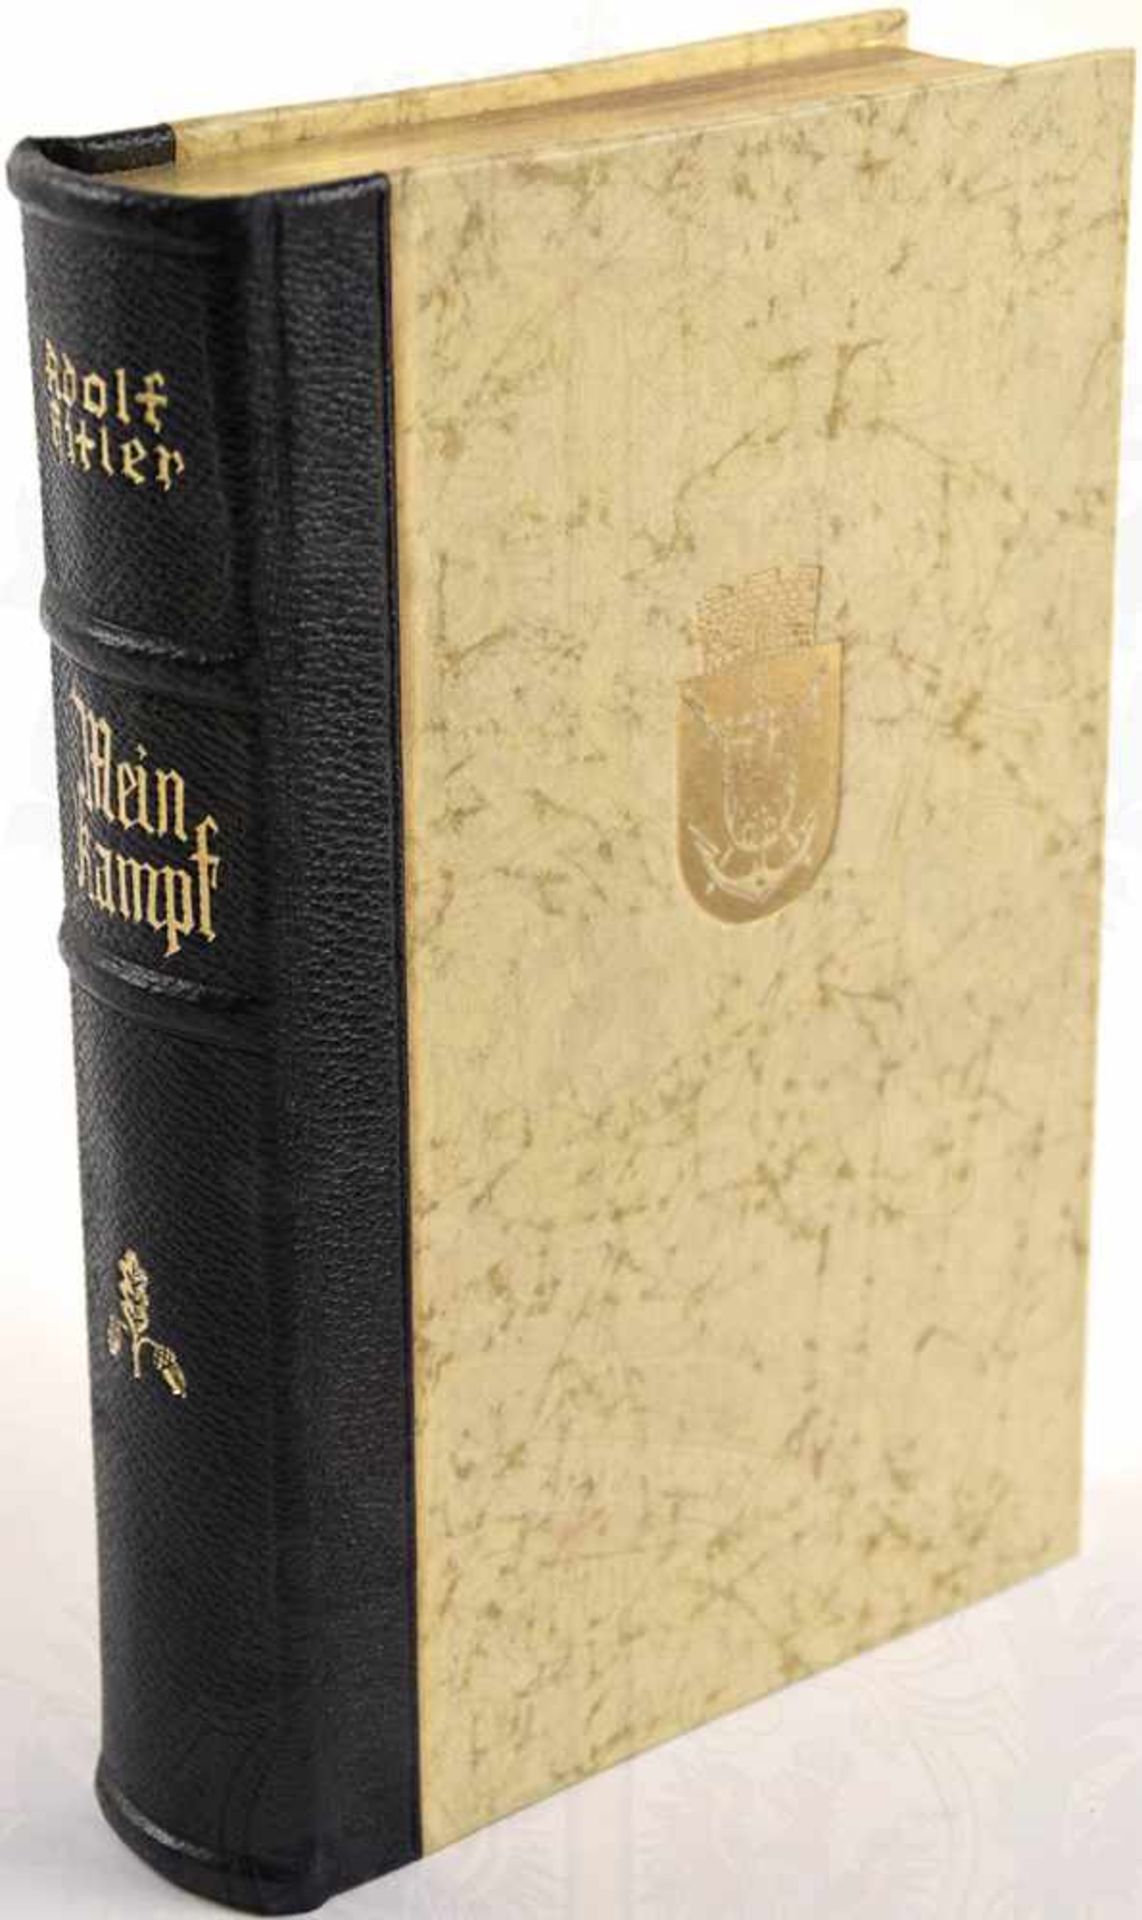 MEIN KAMPF, Adolf Hitler, Hochzeitsausgabe, Eher Verlag, 1938, Porträtbild, 781 S., goldgepr. - Bild 2 aus 4